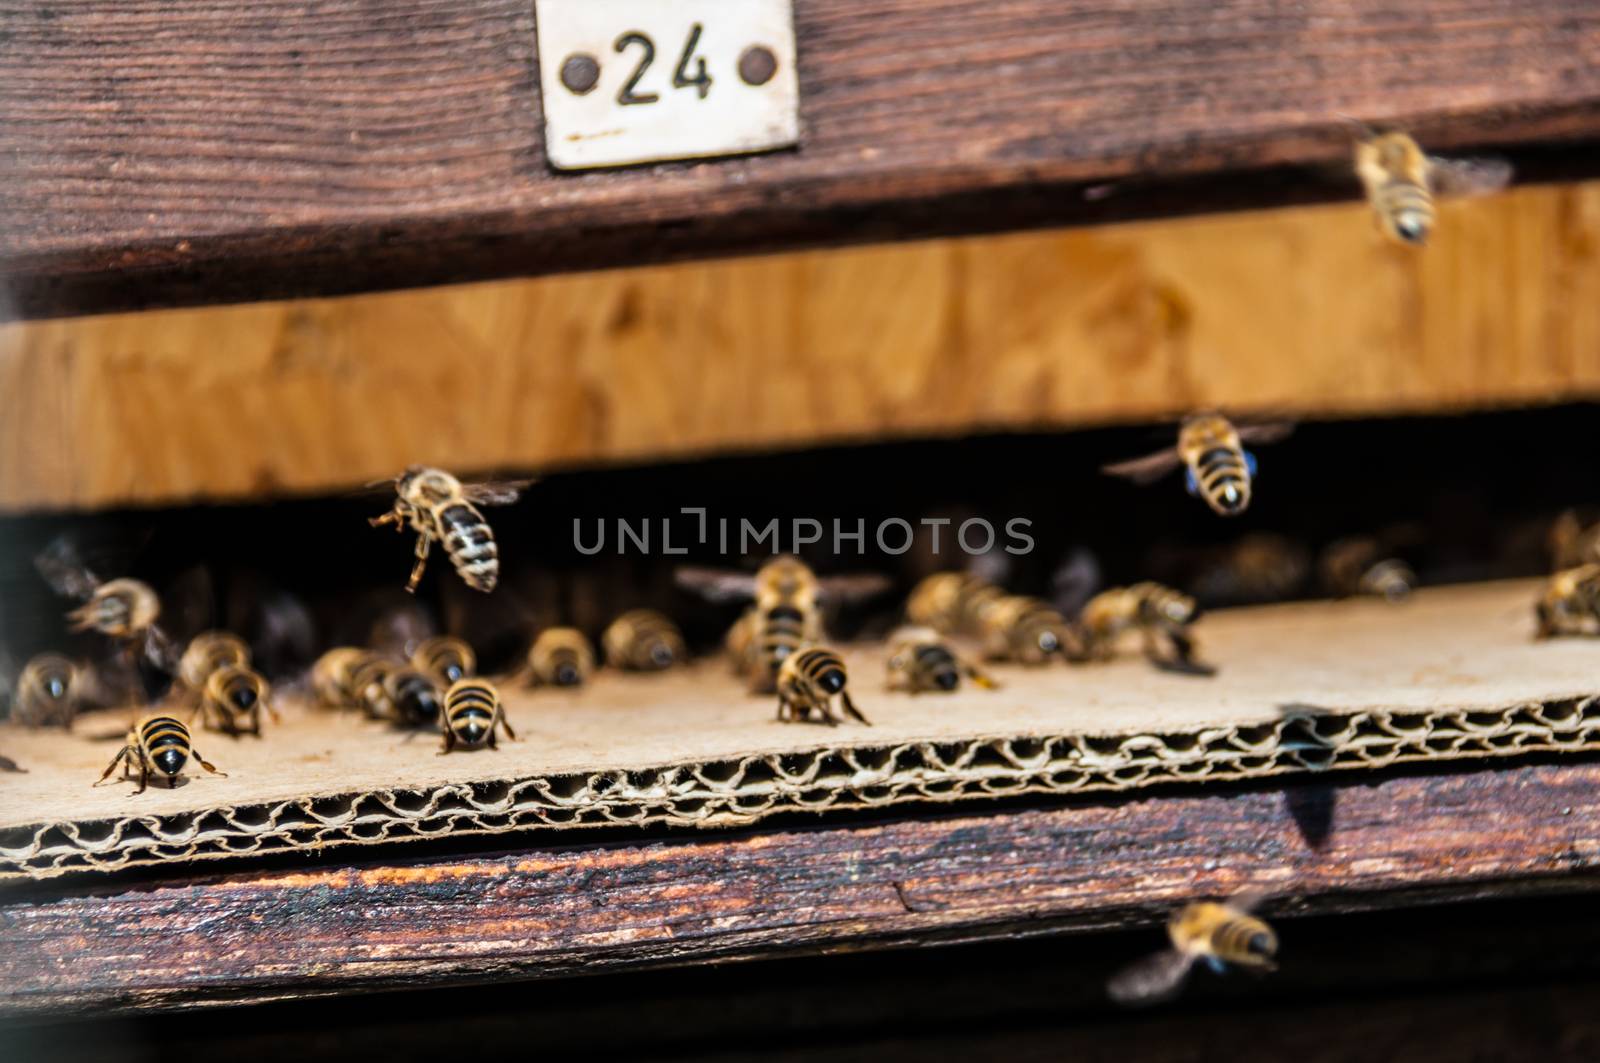 Beehive by Jule_Berlin